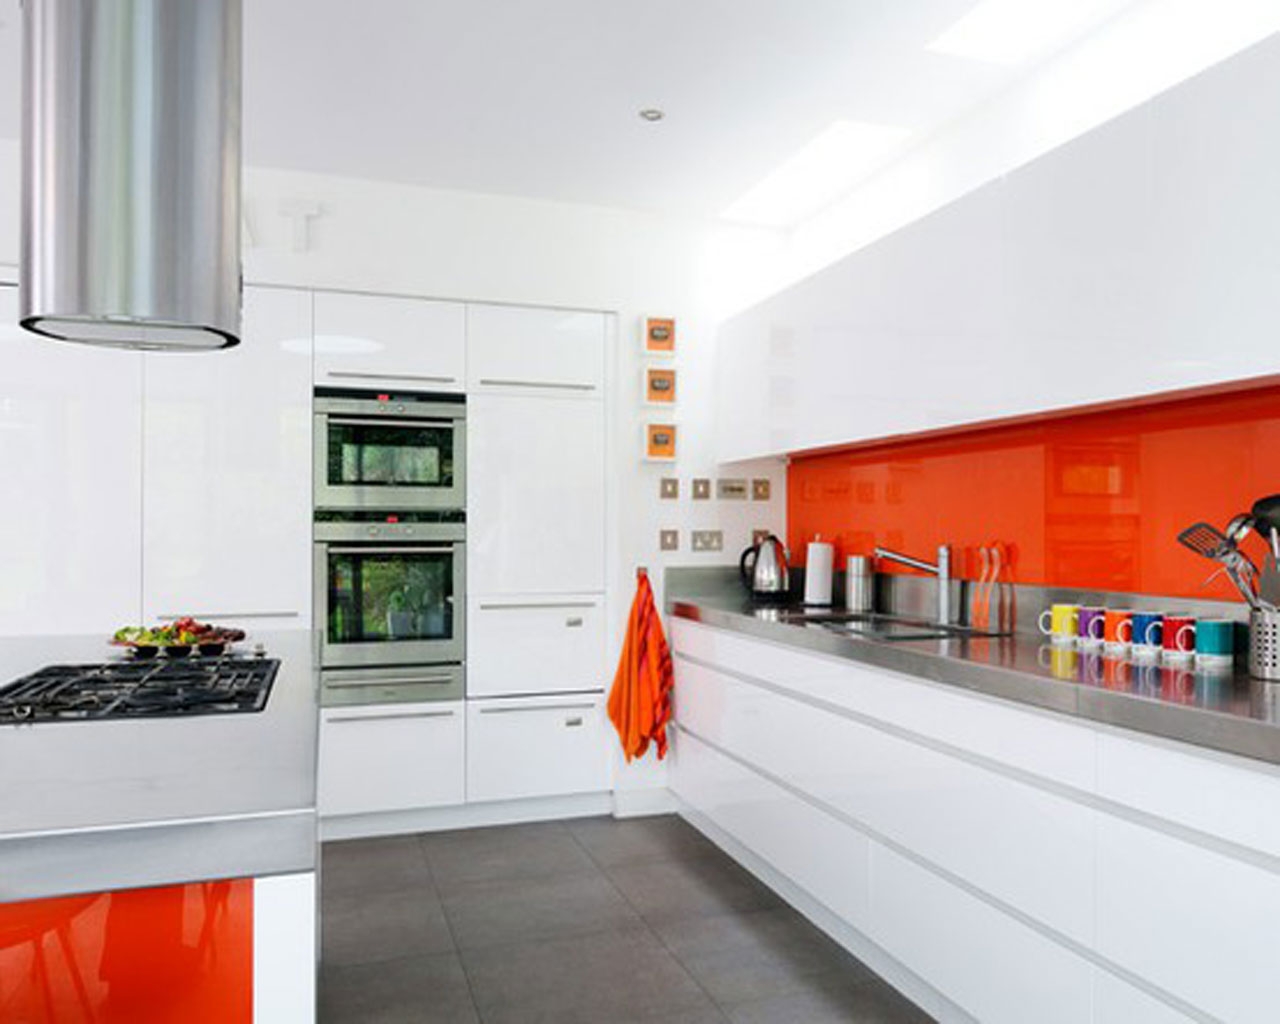 http://mydecorative.com/wp-content/uploads/2013/05/Kitchen-with-orange-accents-ideas-design-best-kitchen-design-2013.jpeg